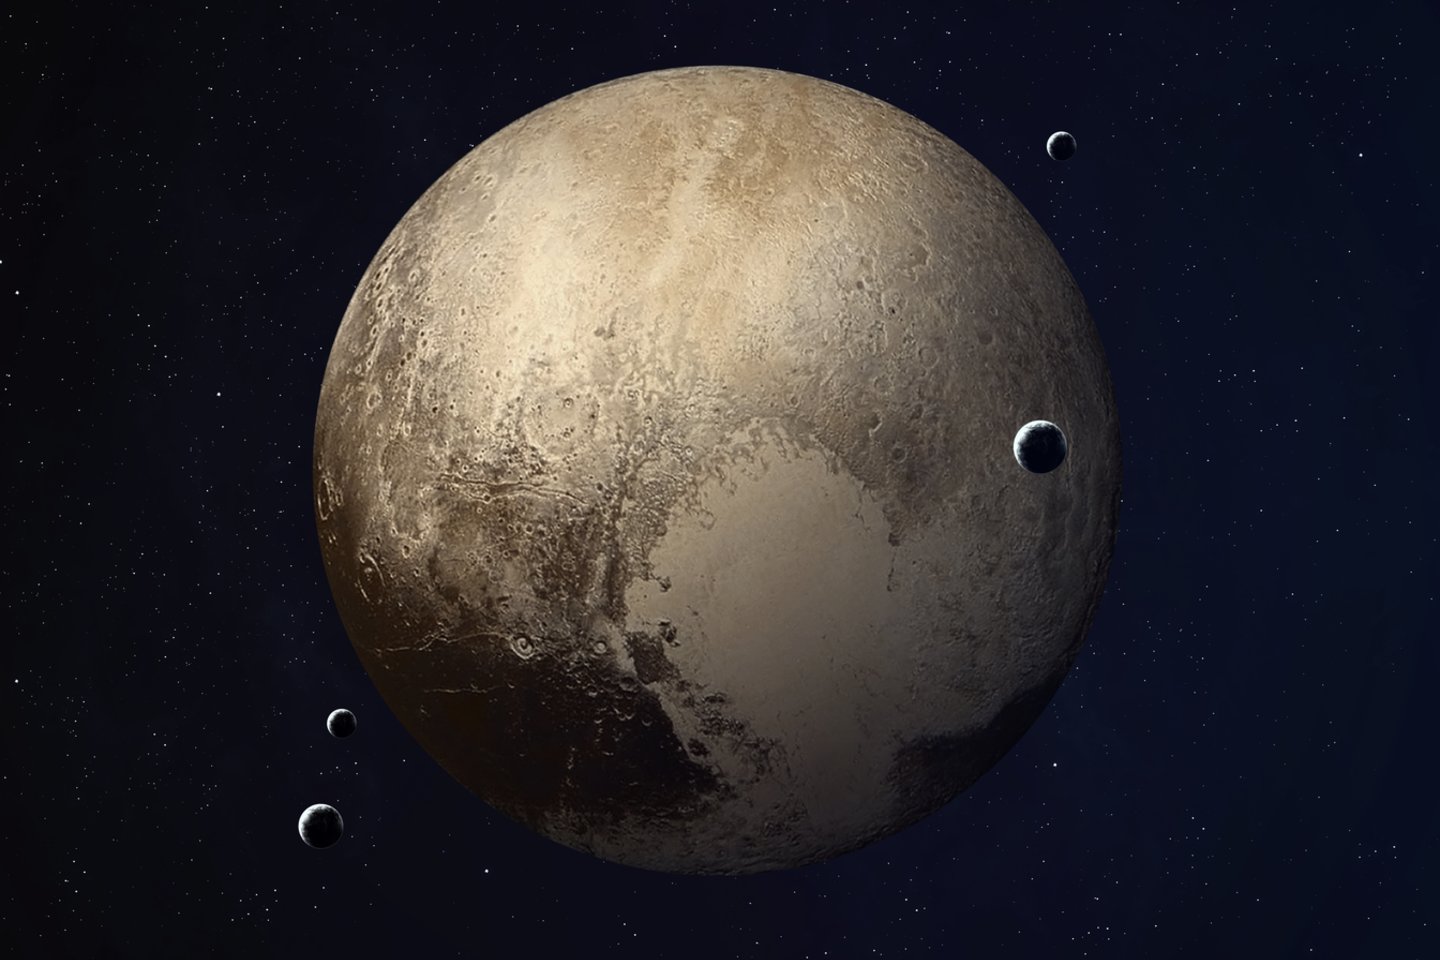  Nuo 1930 iki 2006 metų Plutonas buvo laikomas planeta, tačiau vėliau šio statuso neteko ir dabar vadinamas nykštukine planeta.<br> 123rf iliustr.